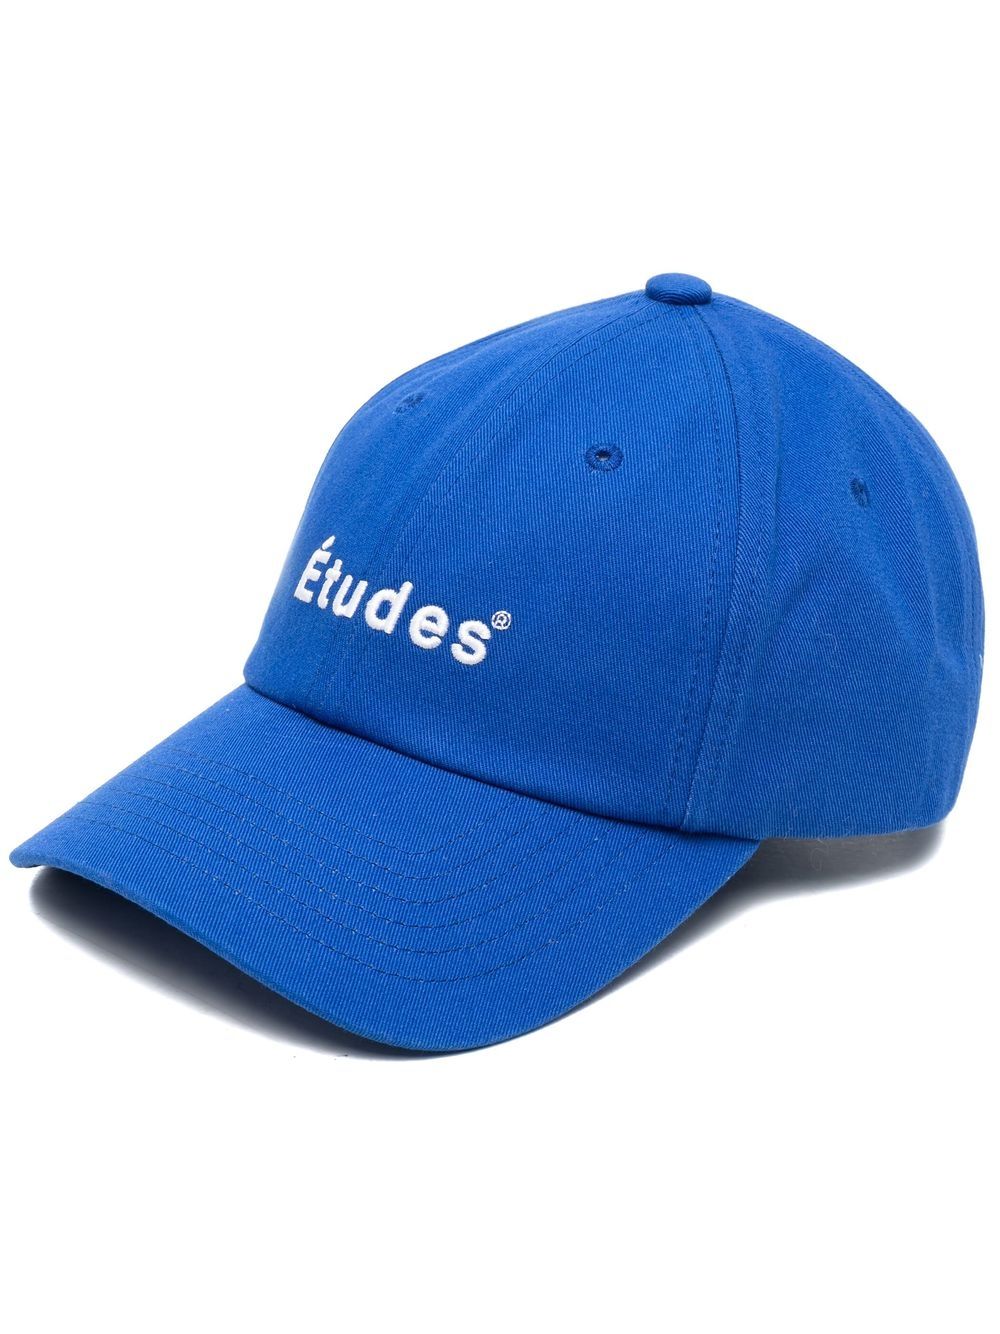 Etudes logo embroidered cap - Blue von Etudes